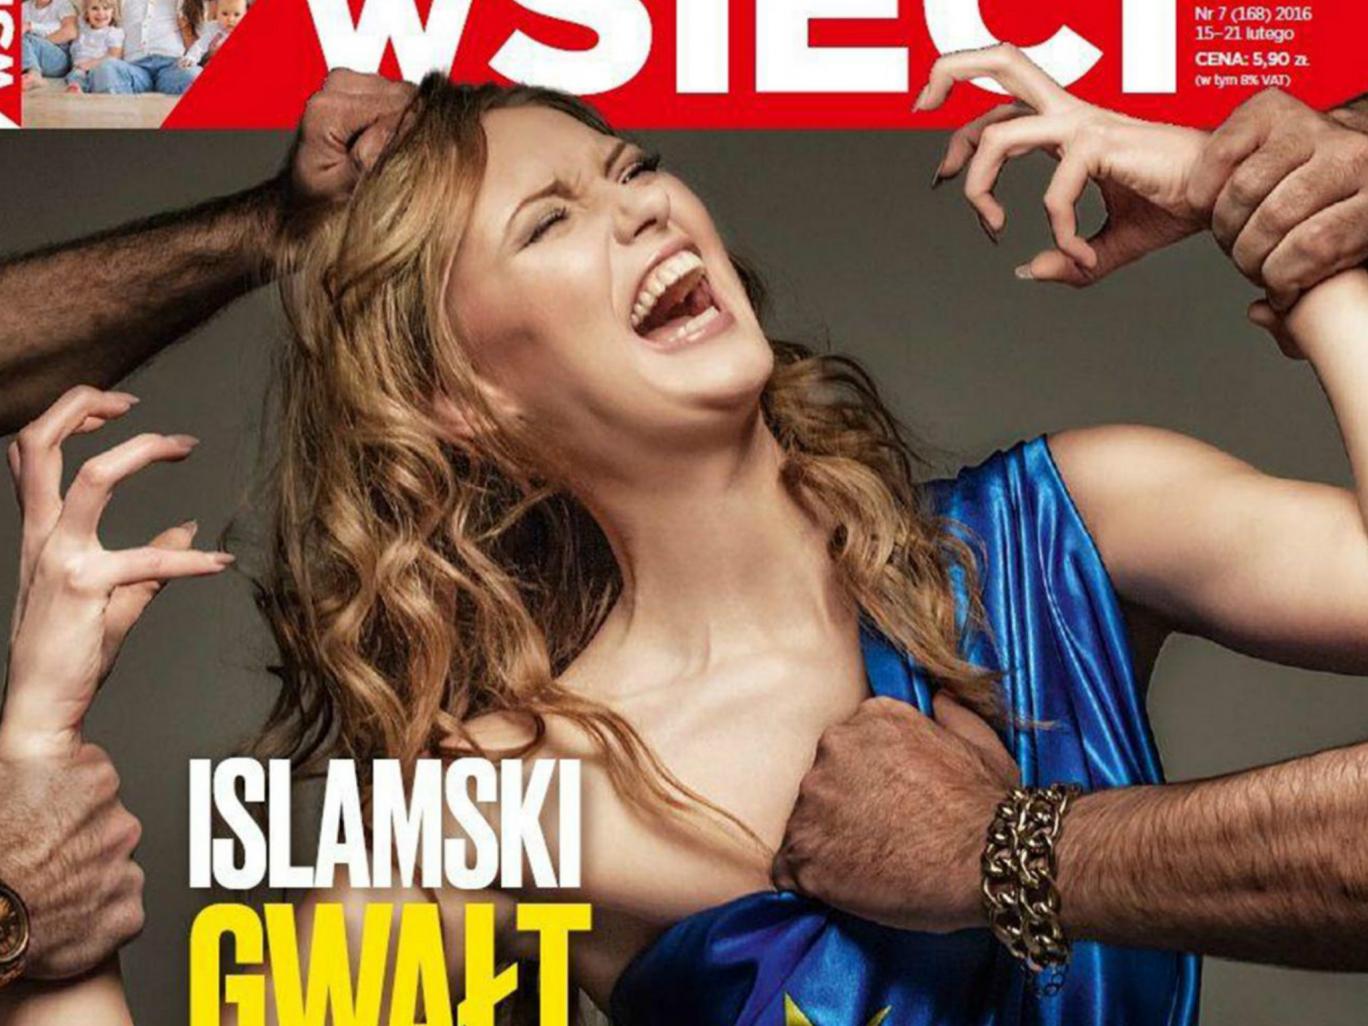 На этой неделе польский журнал wSieci вынес на обложку заголовок 